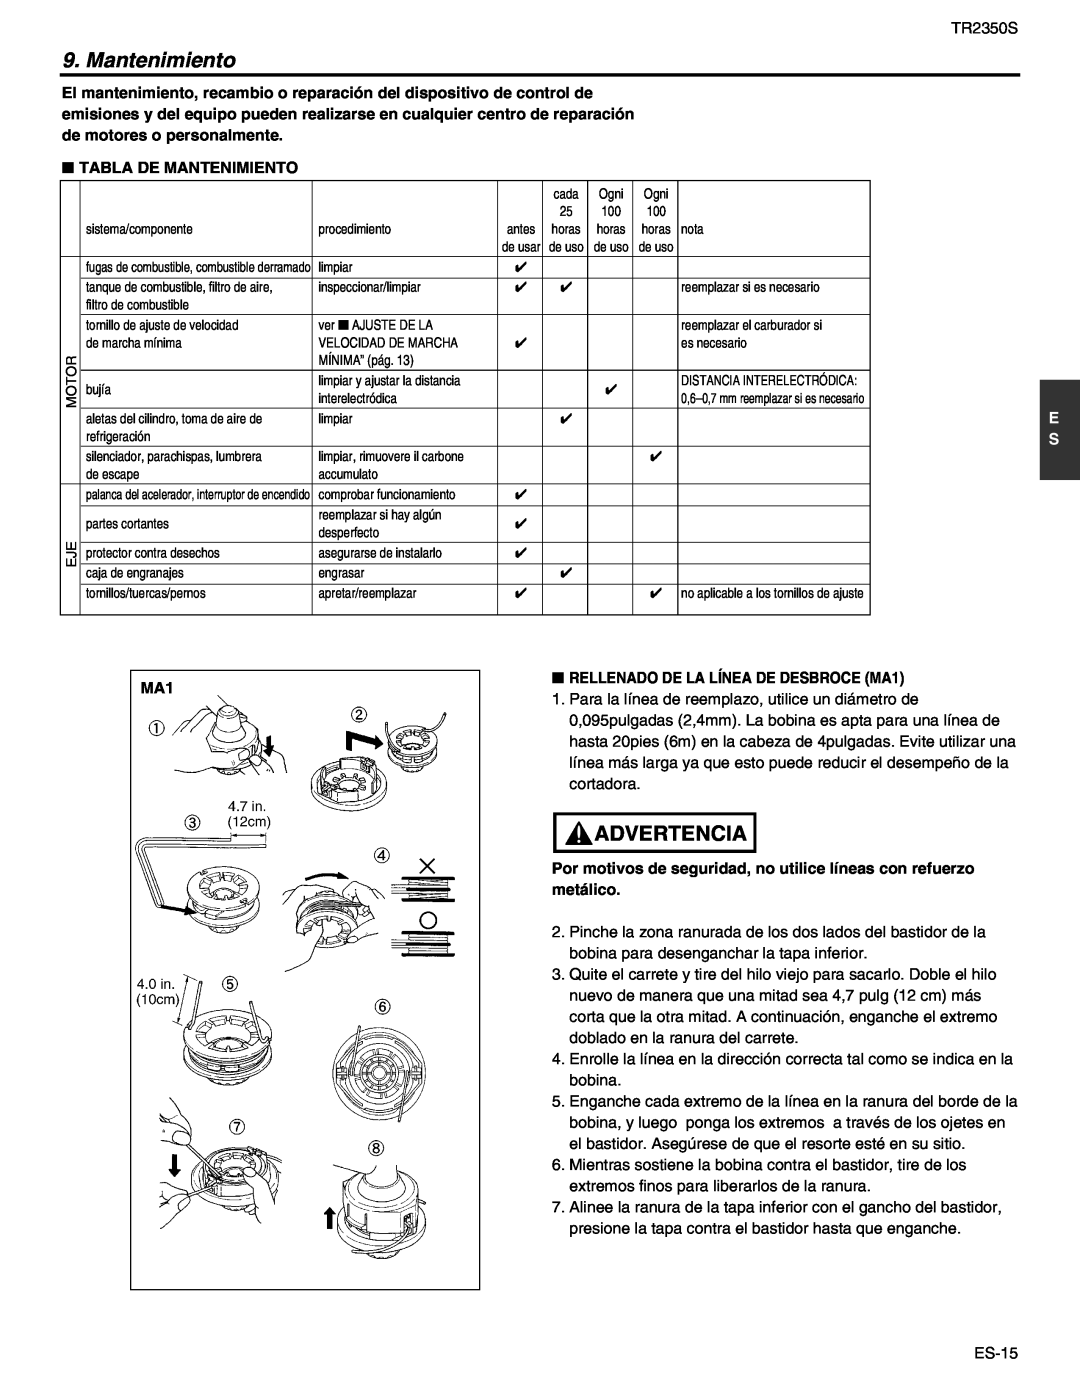 RedMax TR2350S manual Advertencia, Tabla De Mantenimiento, RELLENADO DE LA LÍNEA DE DESBROCE MA1 